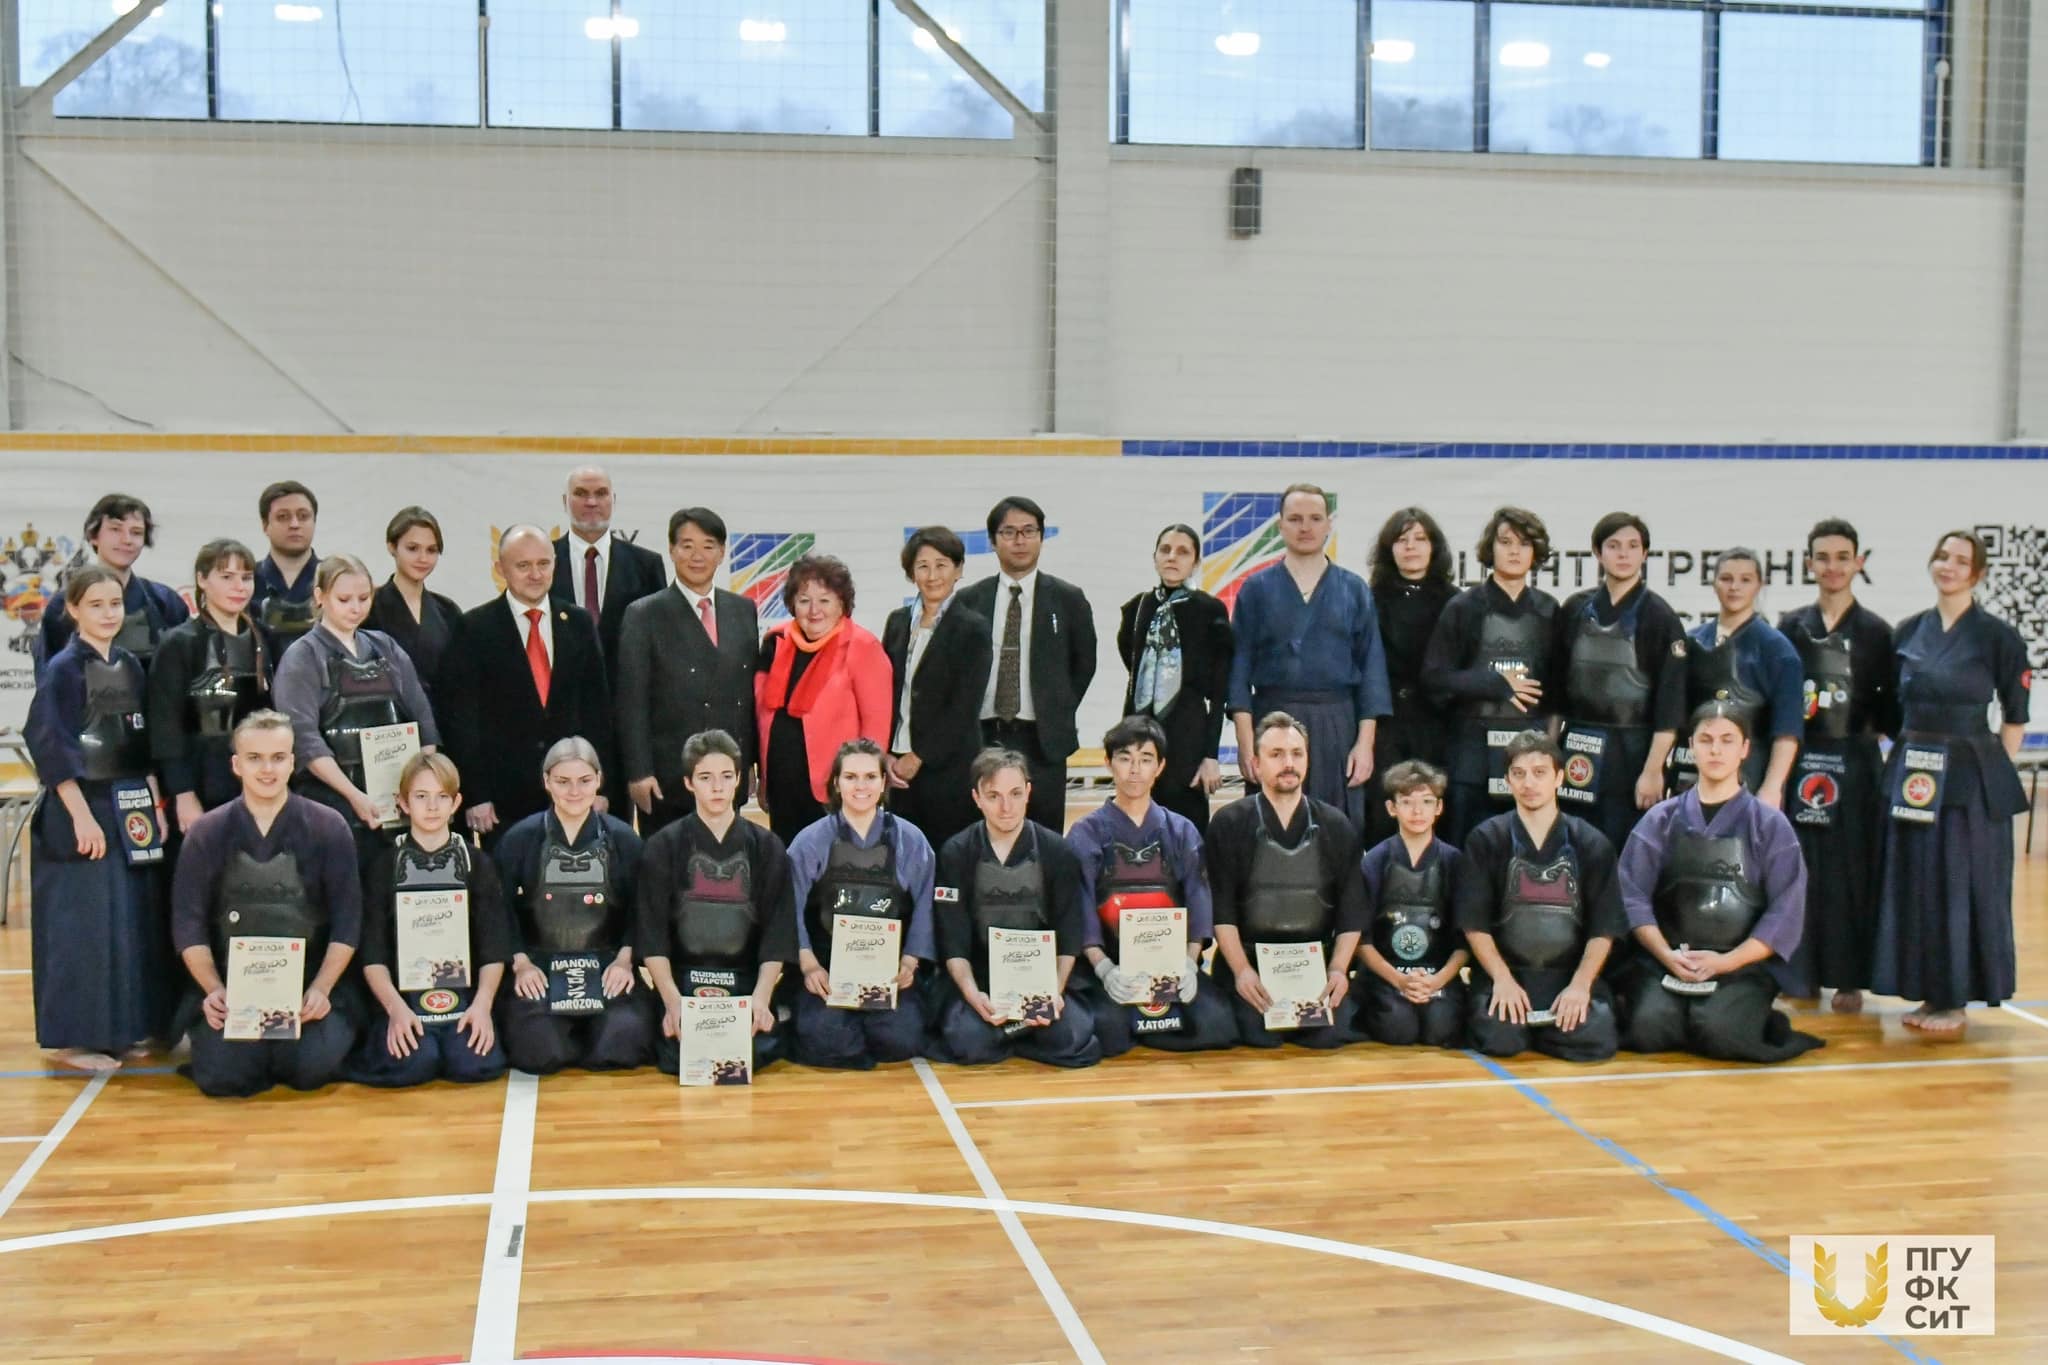 Посол Японии в России г-н Тоёхиса Кодзуки с супругой Хироко Кодзуки посетили турнир по кендо в Казани